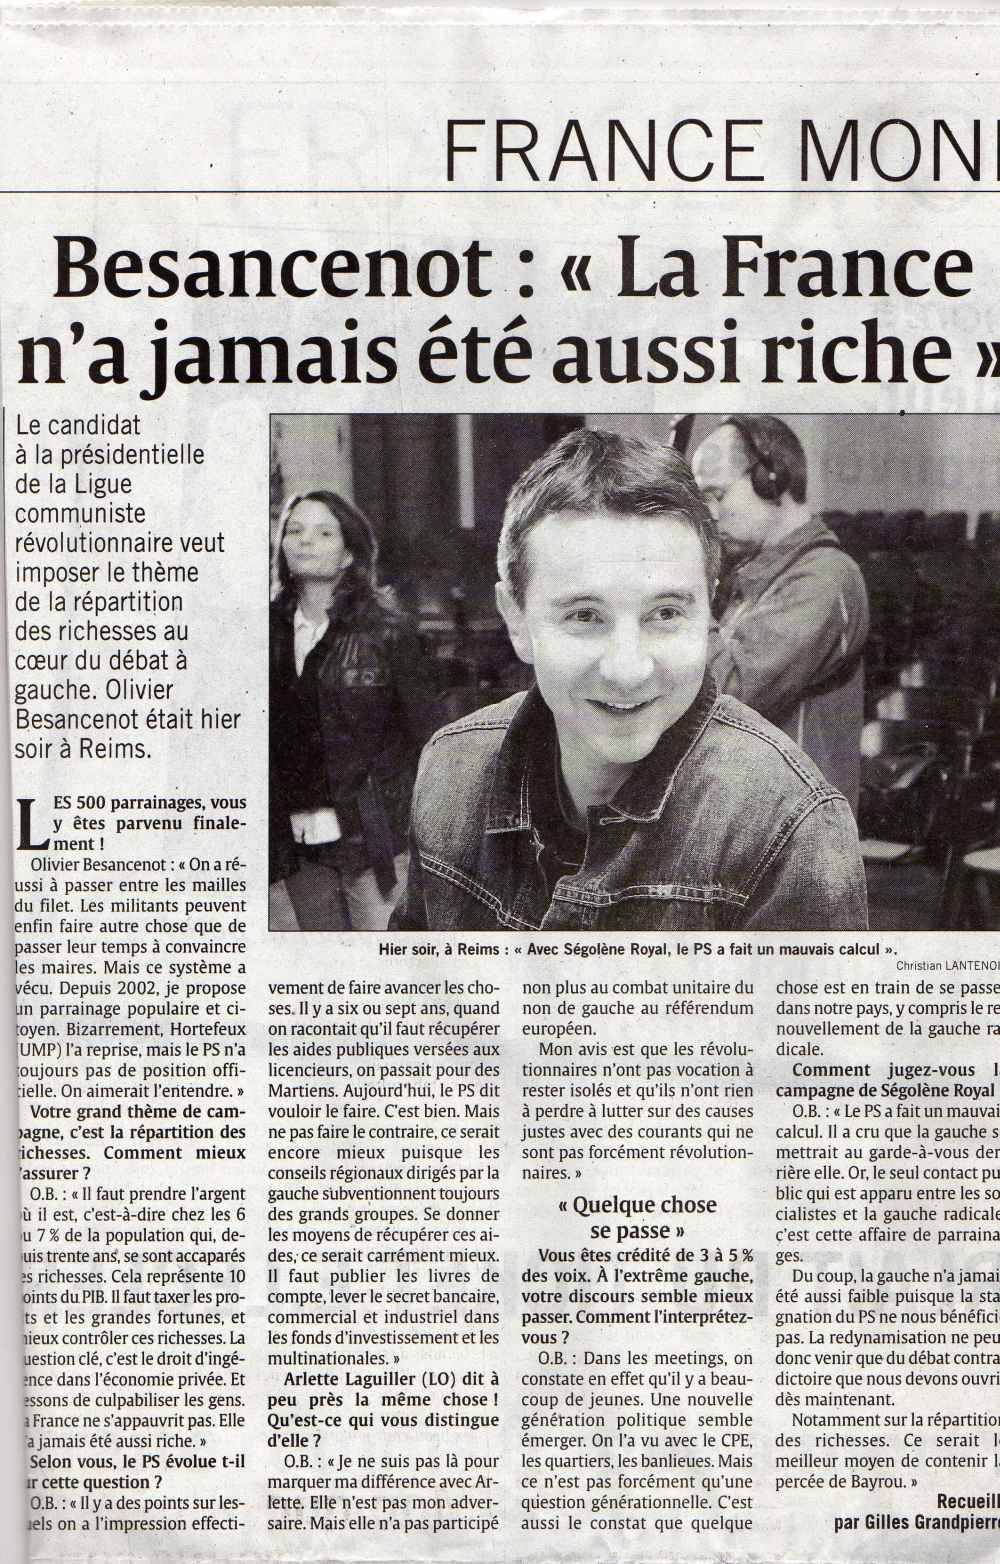 L'Union : interview d'Olivier Besancenot  Reims, mars 2007